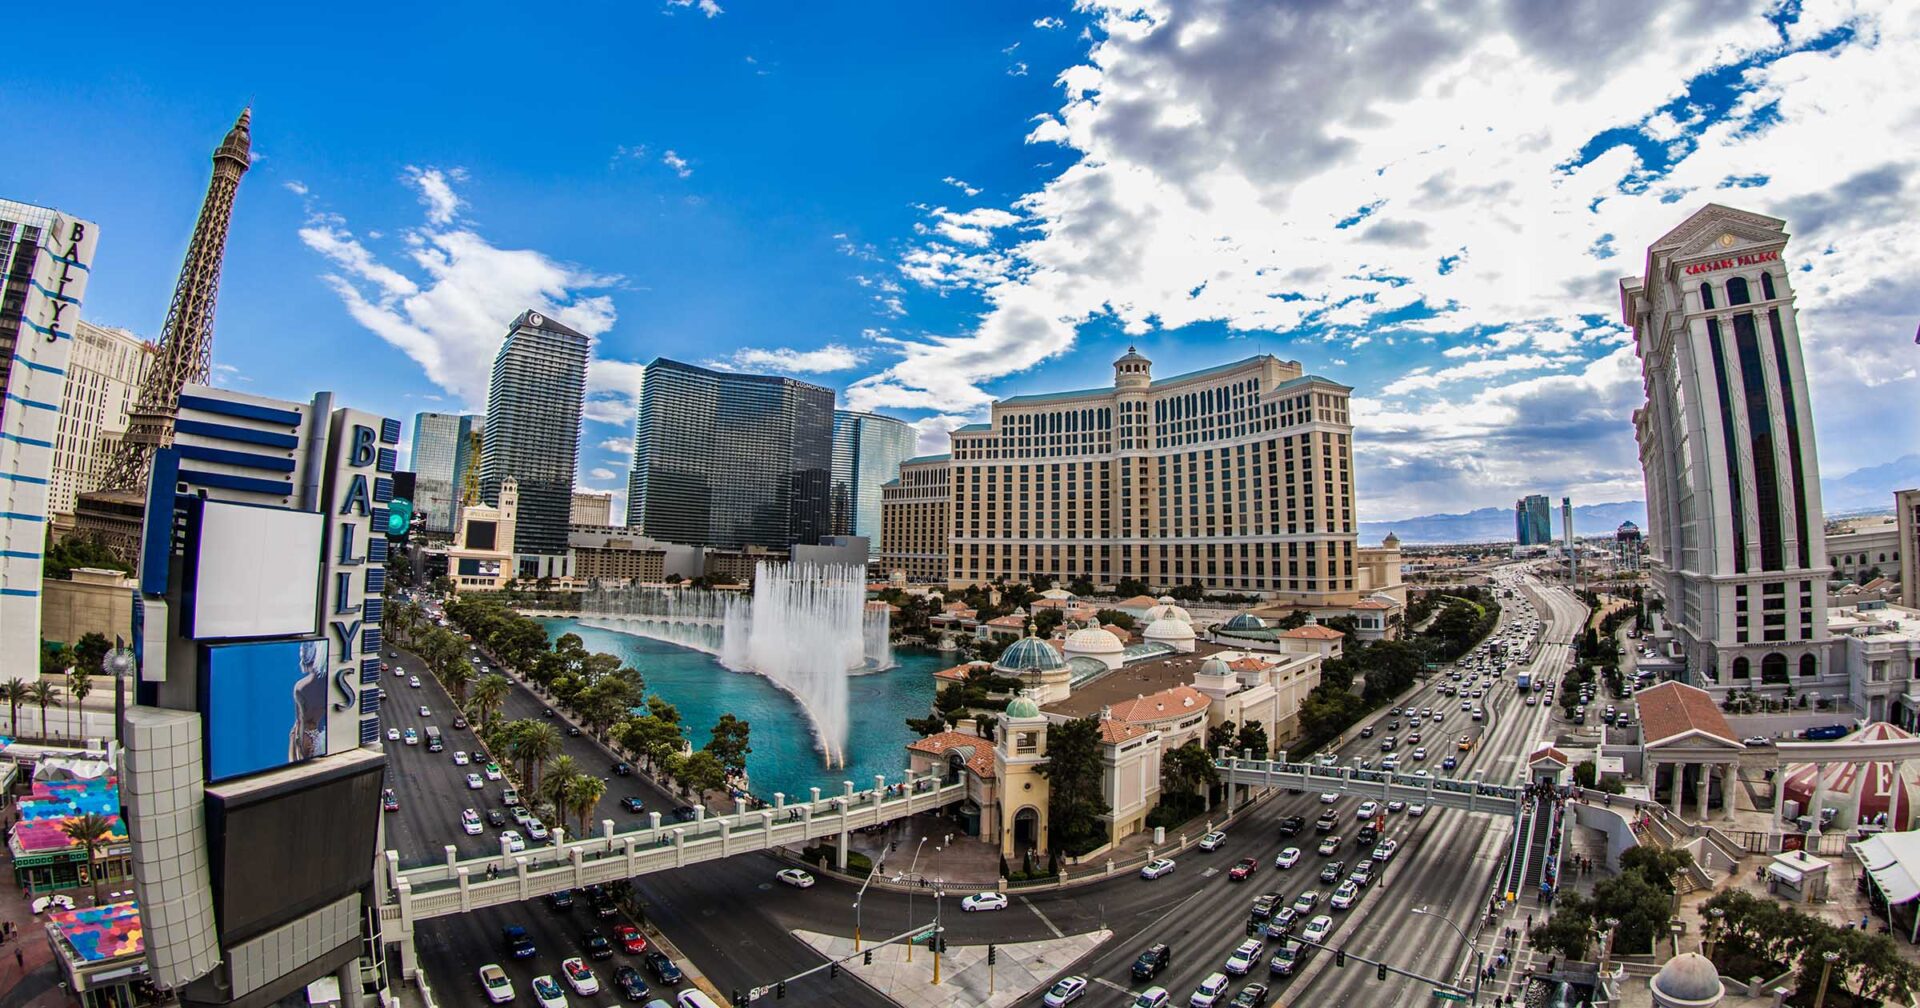 Las Vegas Strip - Bellagio - Paris - Caesars - Cosmopolitan